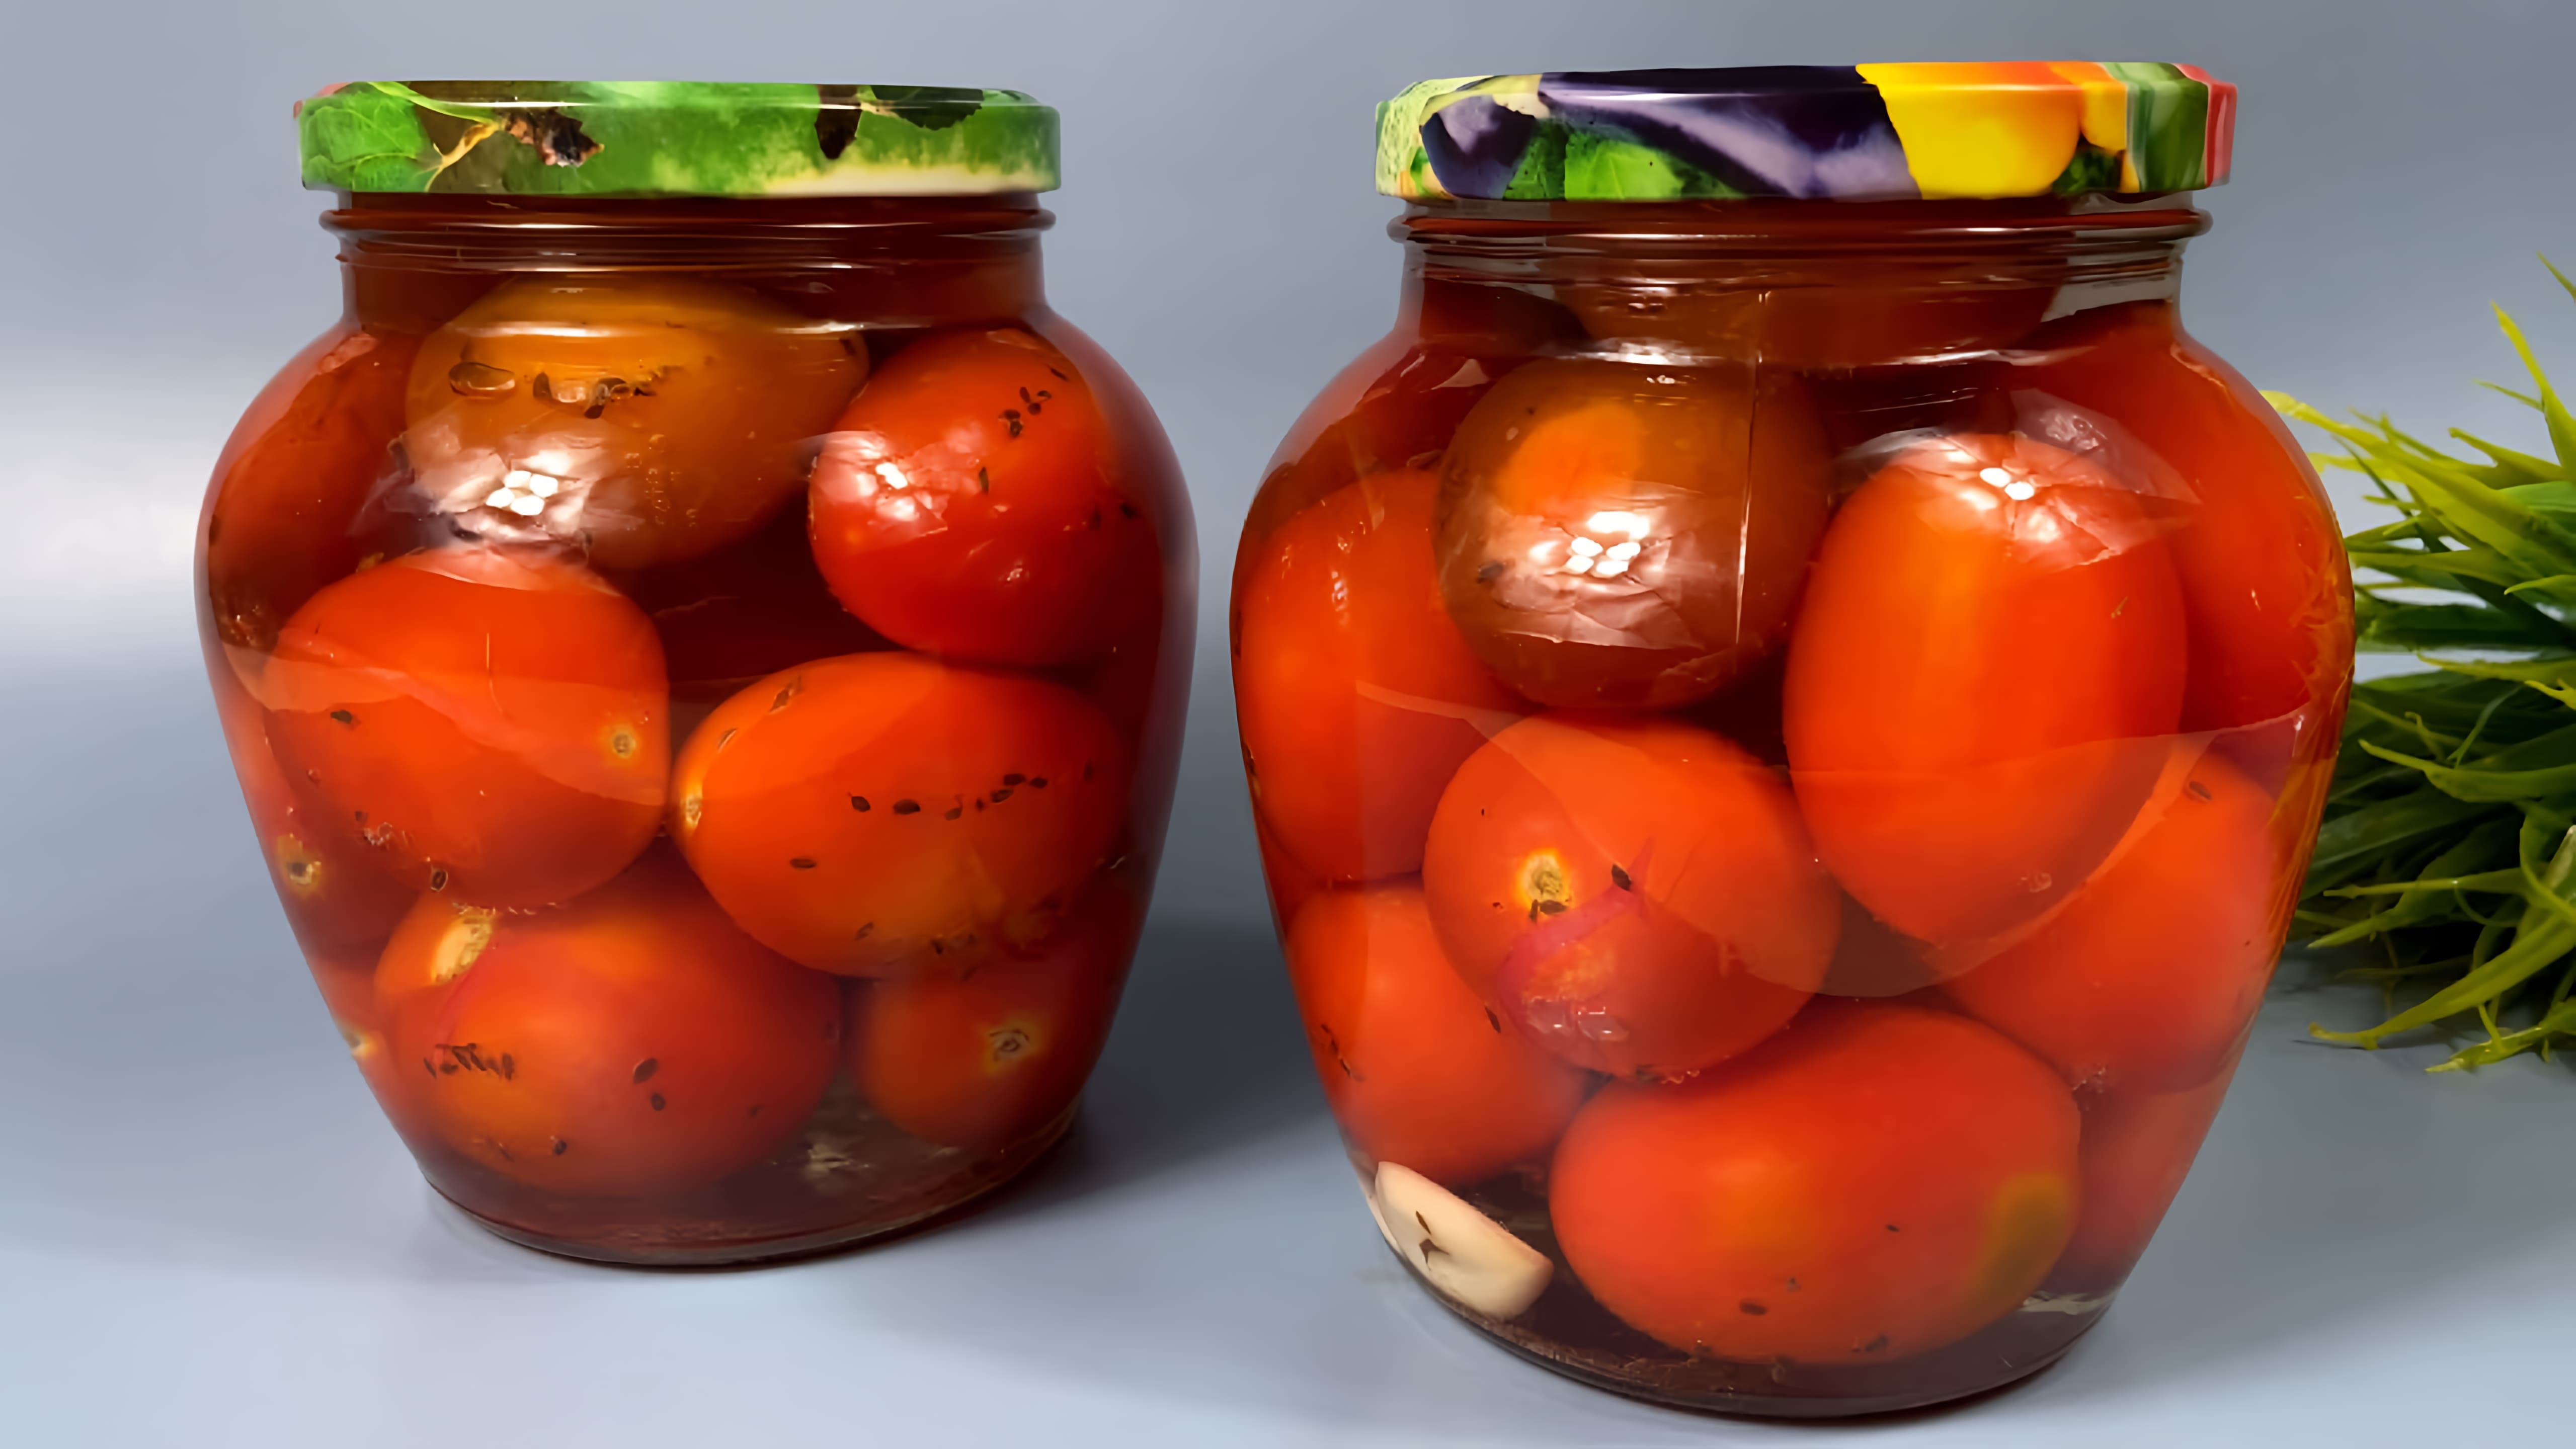 Видео: Никогда так помидоры НЕ ДЕЛАЛА! Полюбила как только ПОПРОБОВАЛА! Оригинально и вкусно НЕВЕРОЯТНО!